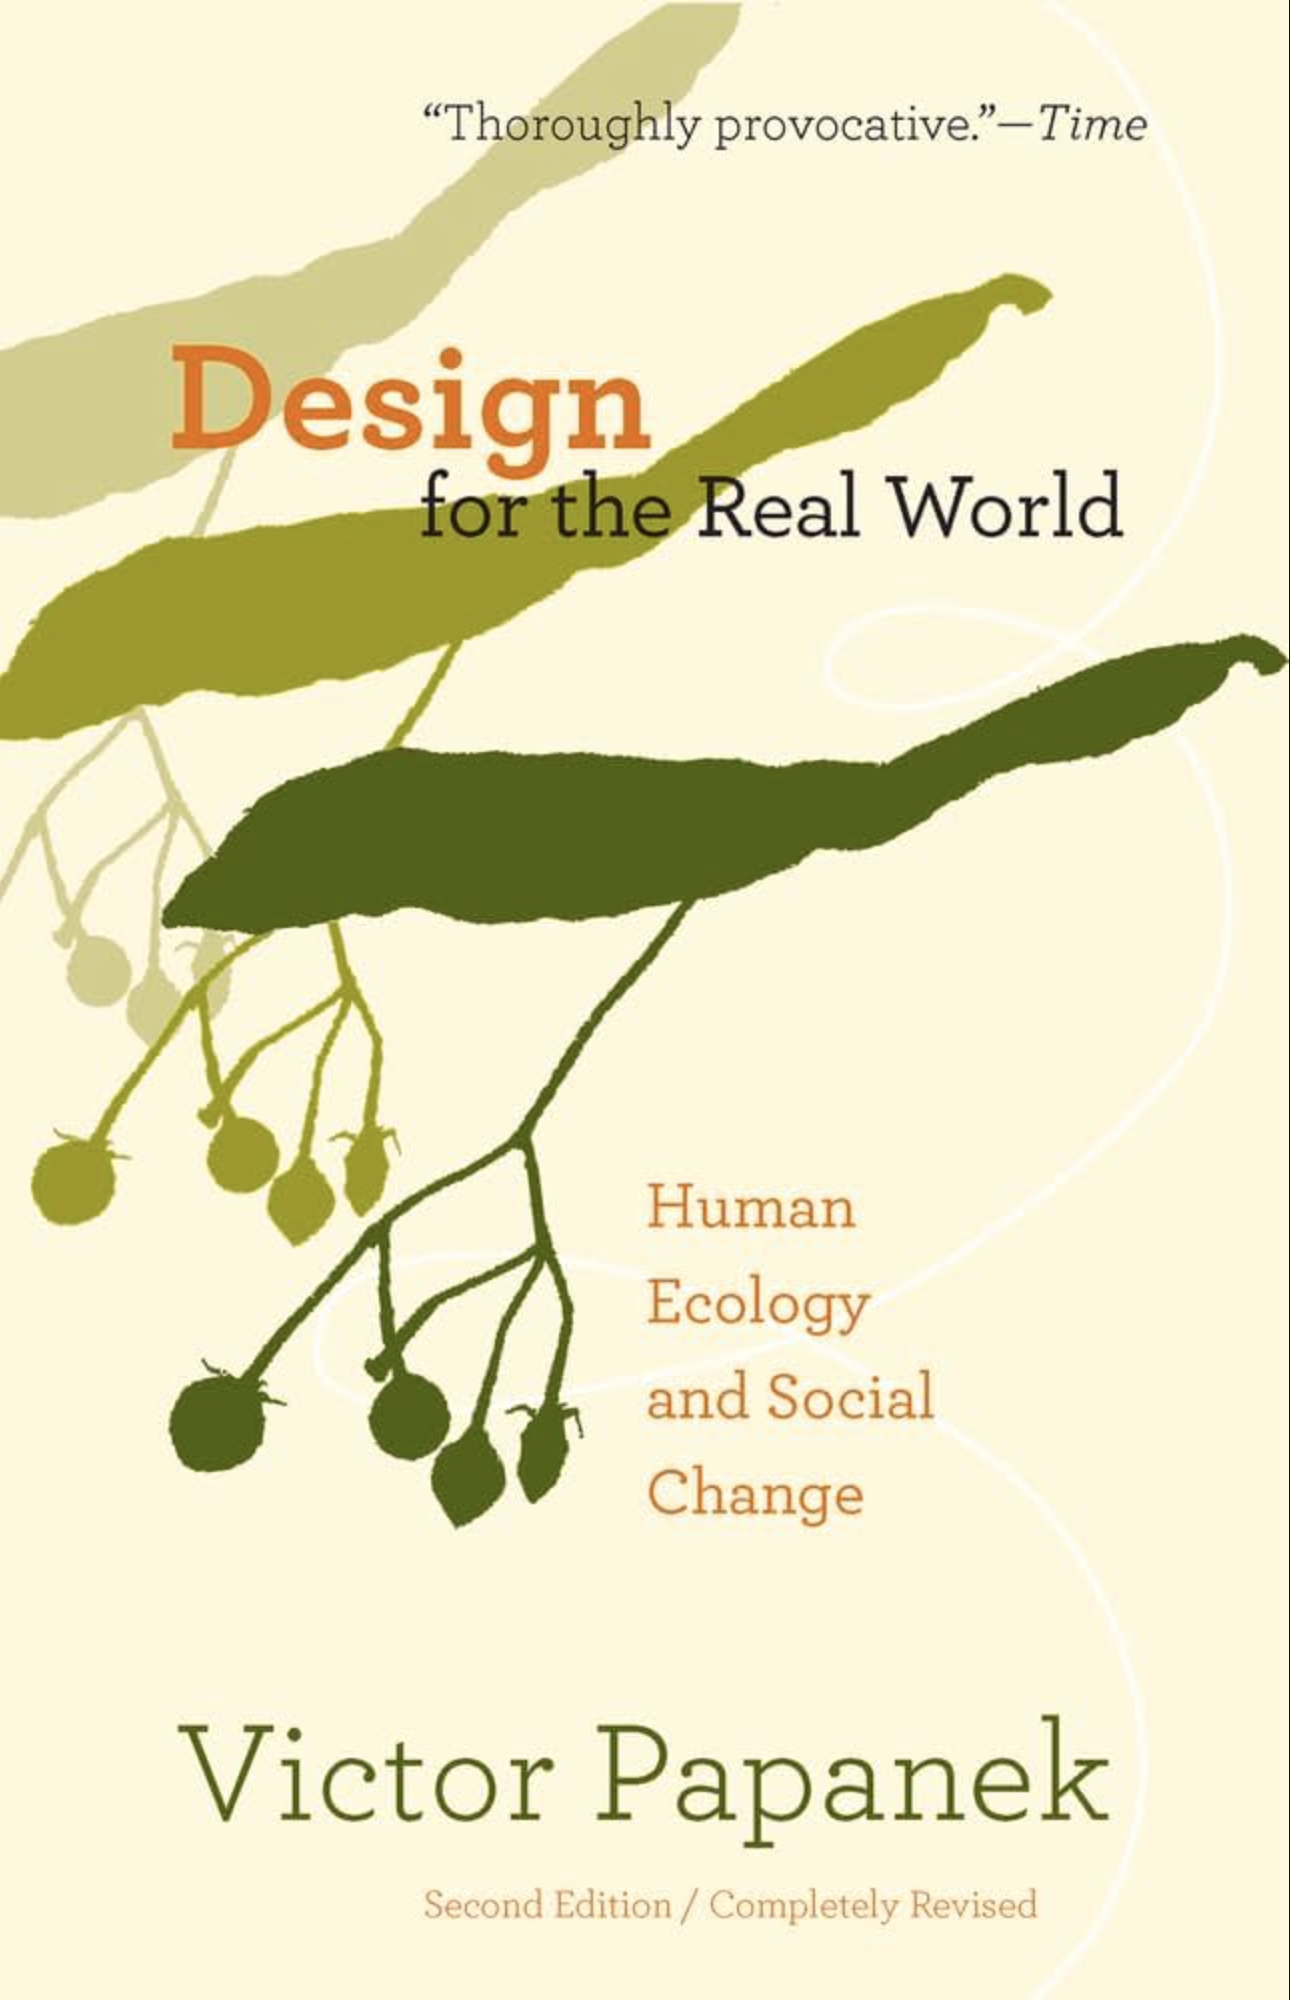 Libro "Diseño para el mundo real" por Victor Papanek